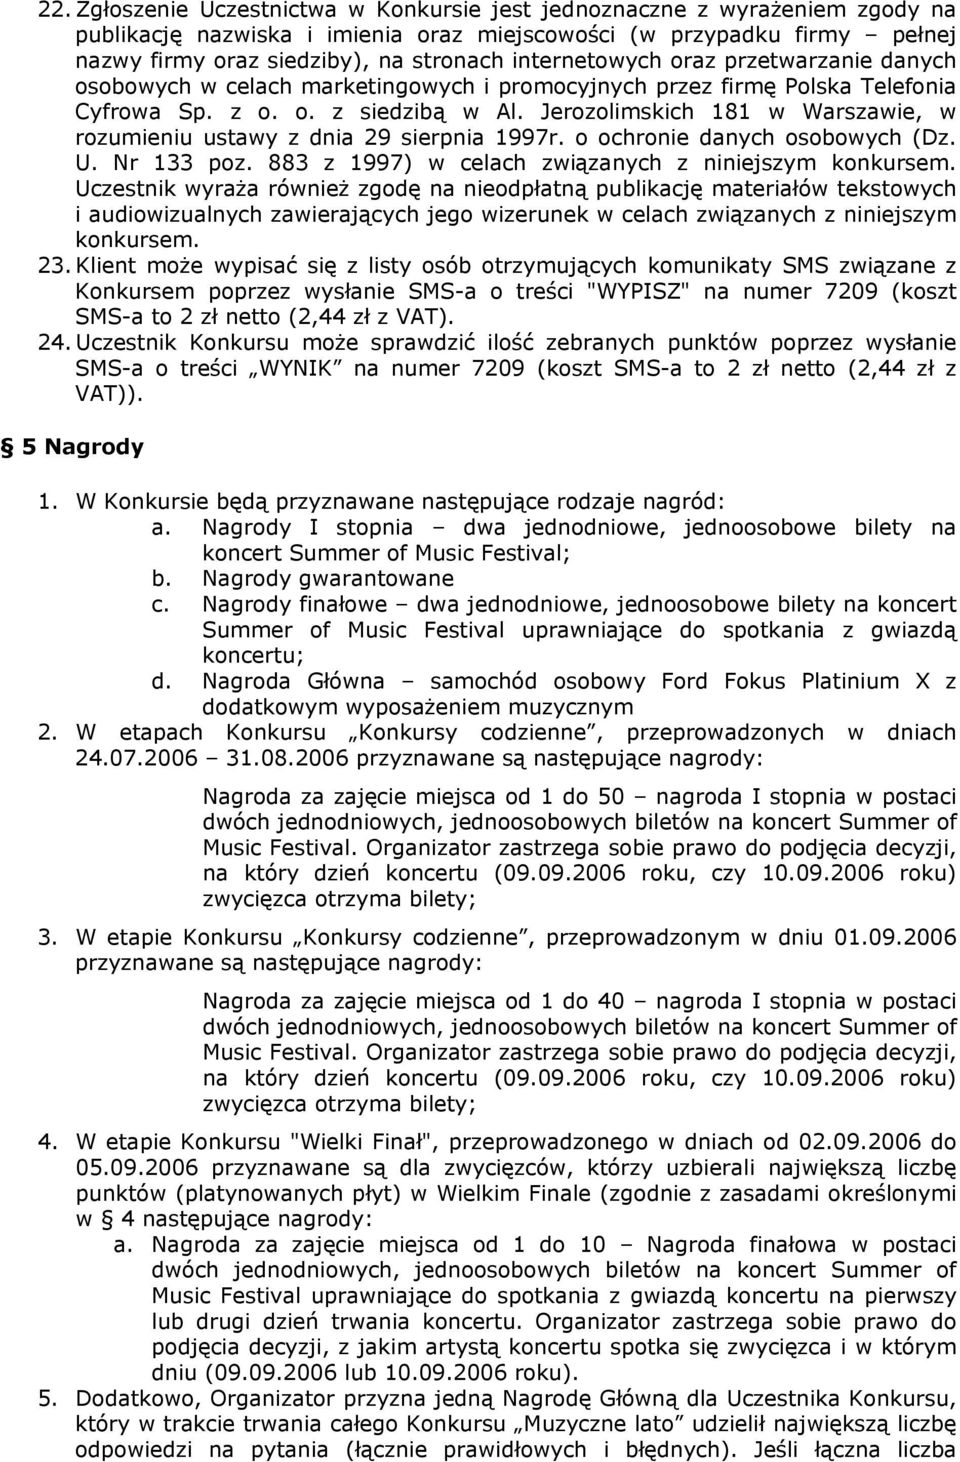 Jerozolimskich 181 w Warszawie, w rozumieniu ustawy z dnia 29 sierpnia 1997r. o ochronie danych osobowych (Dz. U. Nr 133 poz. 883 z 1997) w celach związanych z niniejszym konkursem.